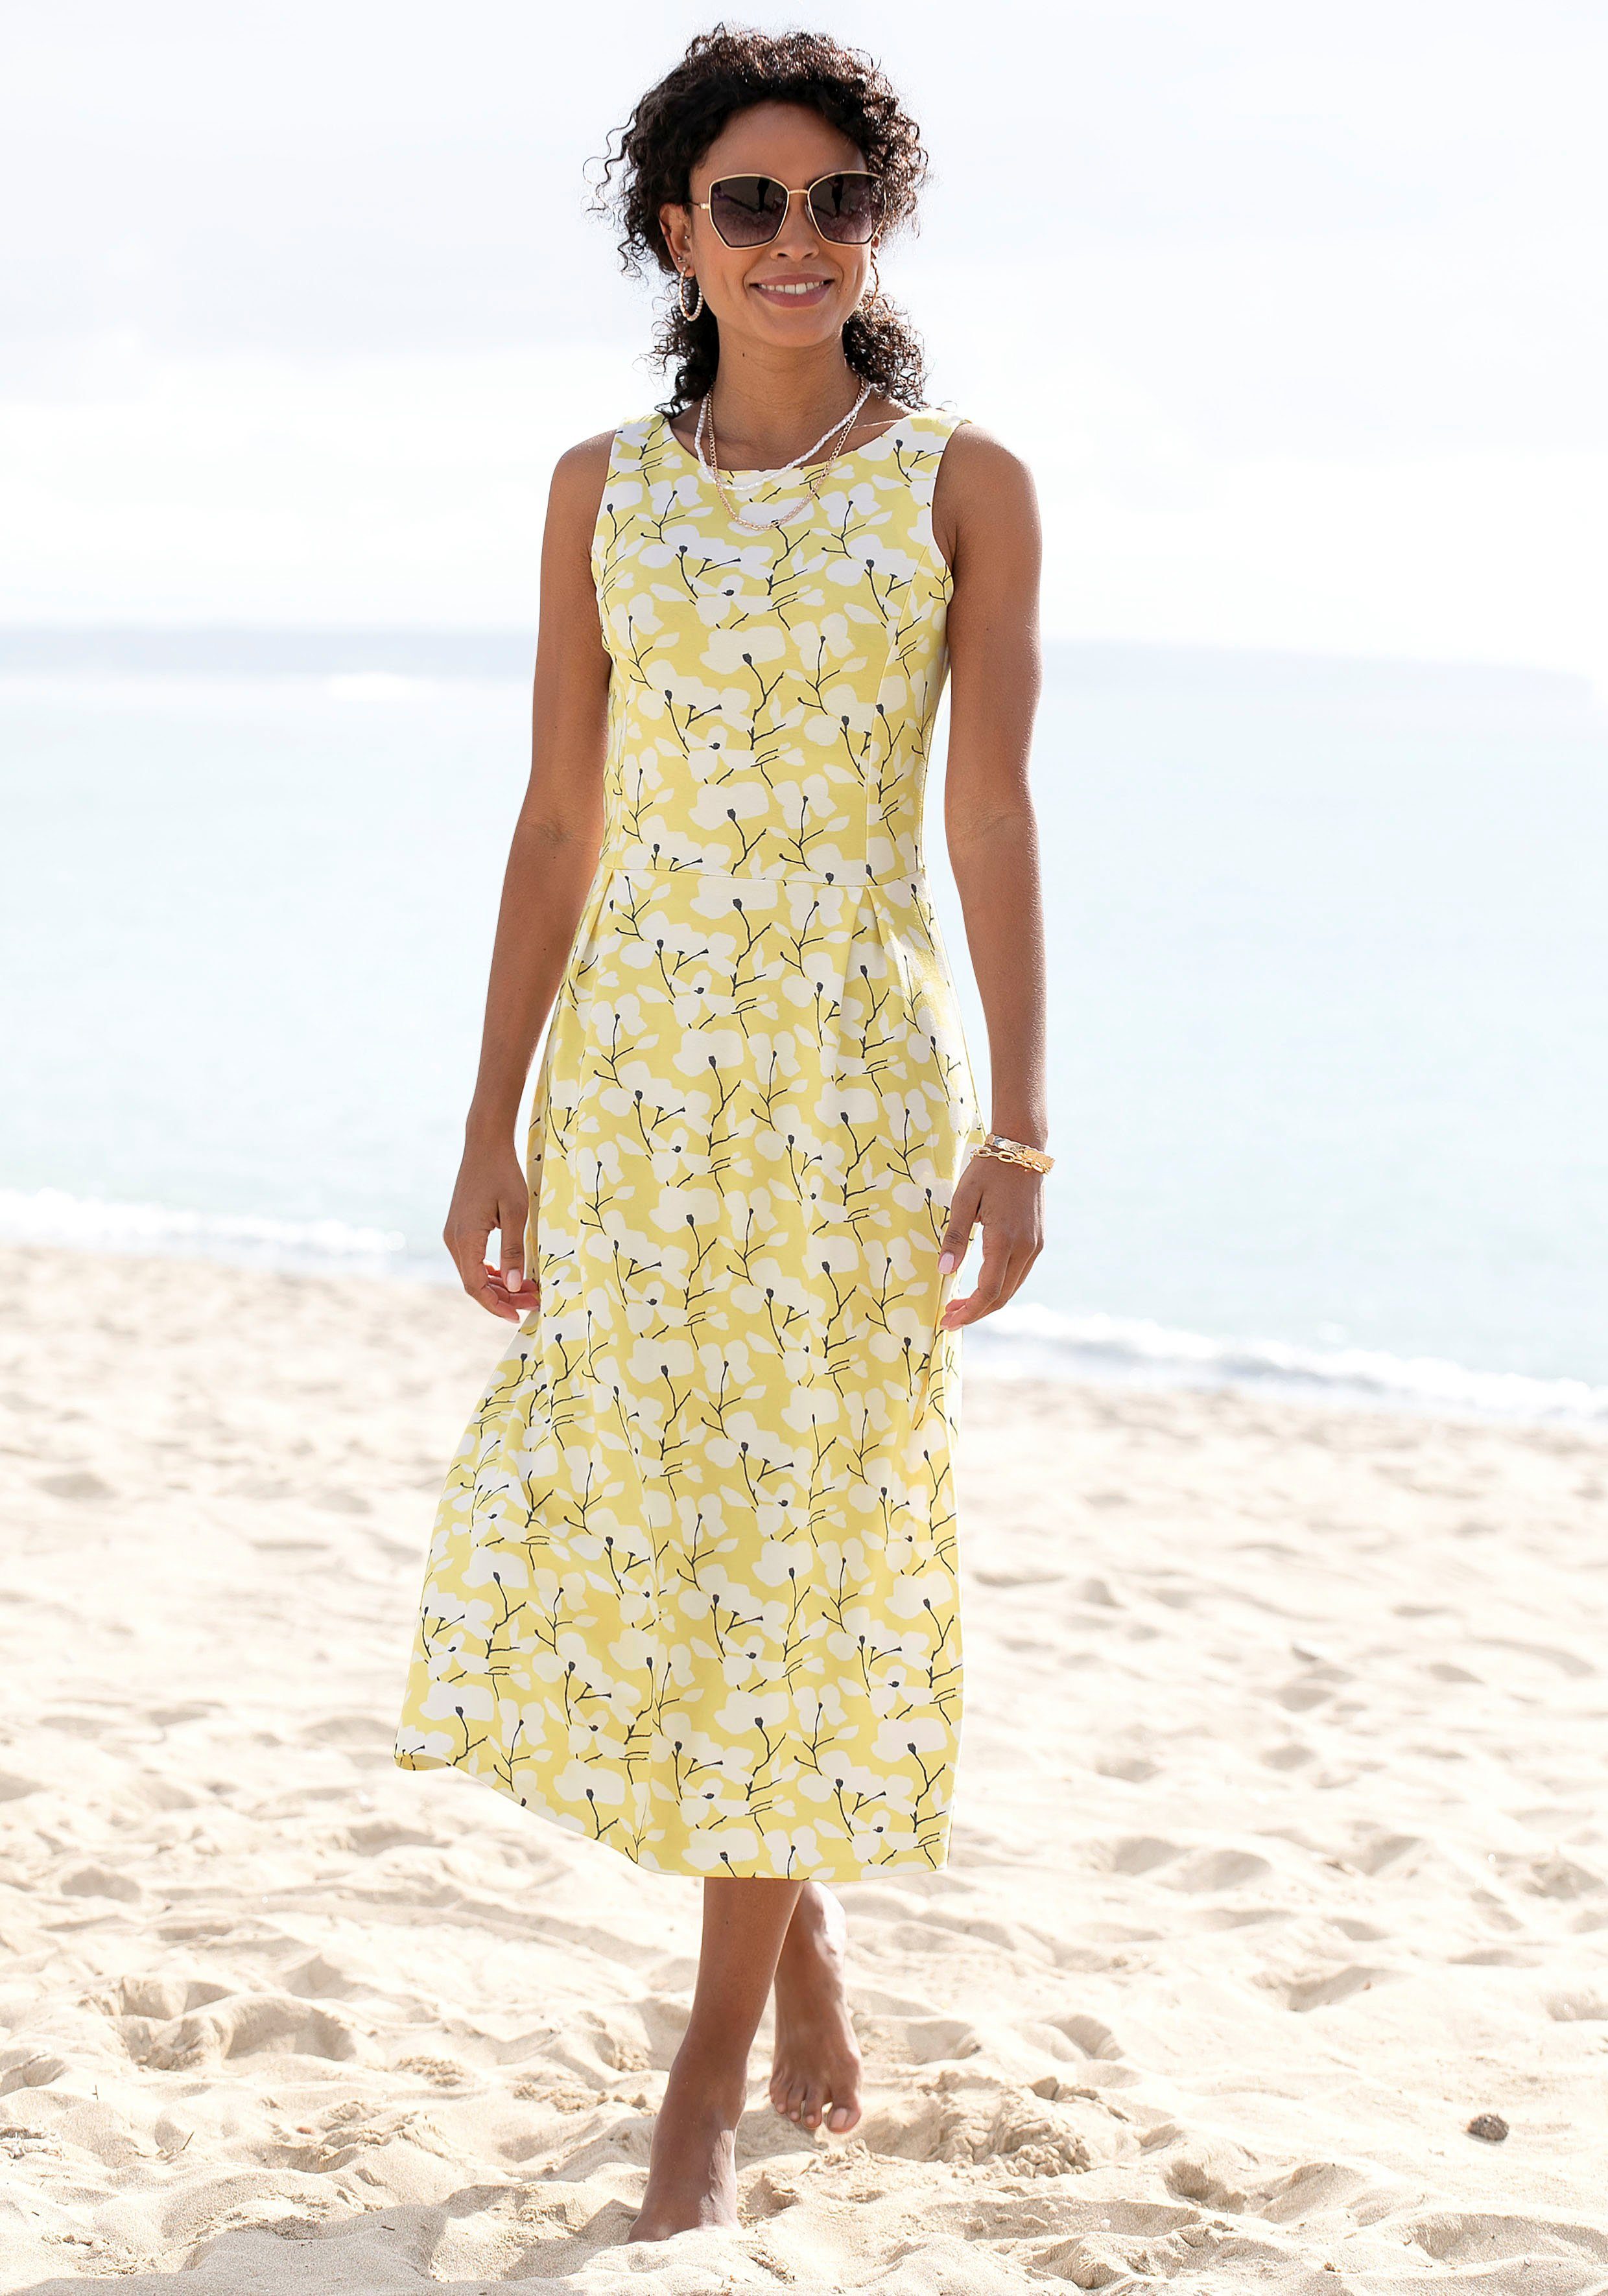 Auslauf Strandbekleidung Blumendruck, gelb-creme-bedruckt Beachtime Sommerkleid Strandmode, mit